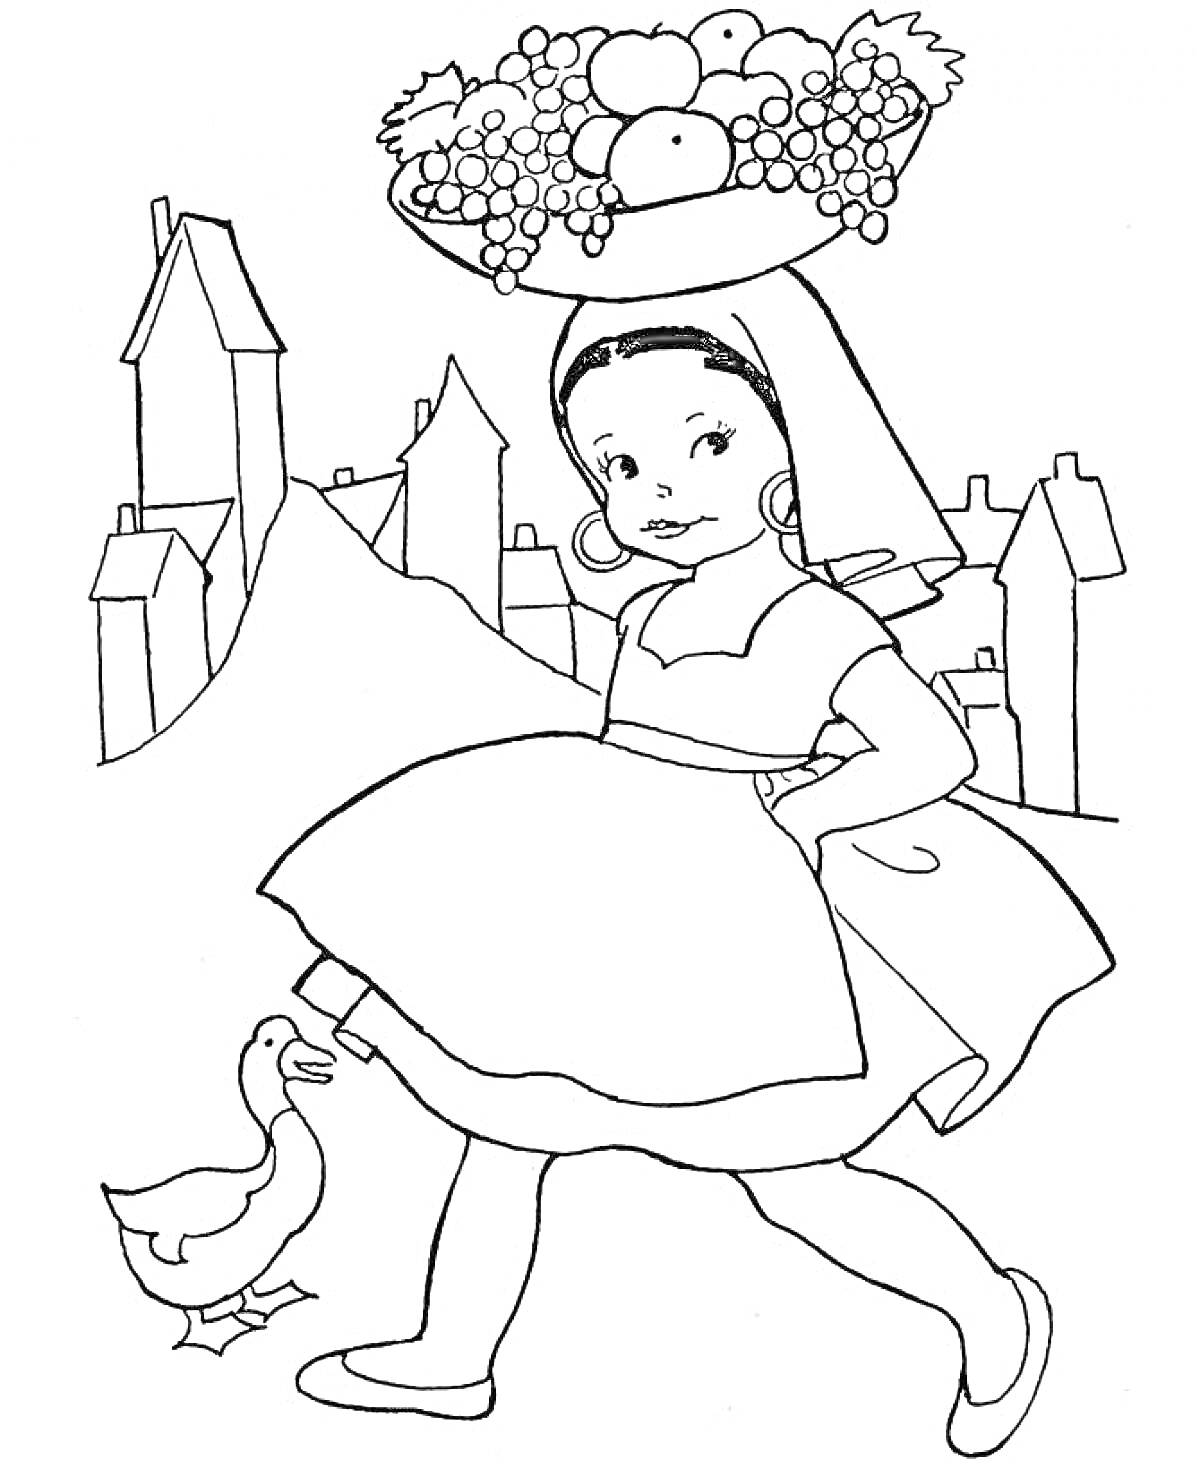 Девочка с корзиной фруктов на голове и уткой на фоне итальянского города